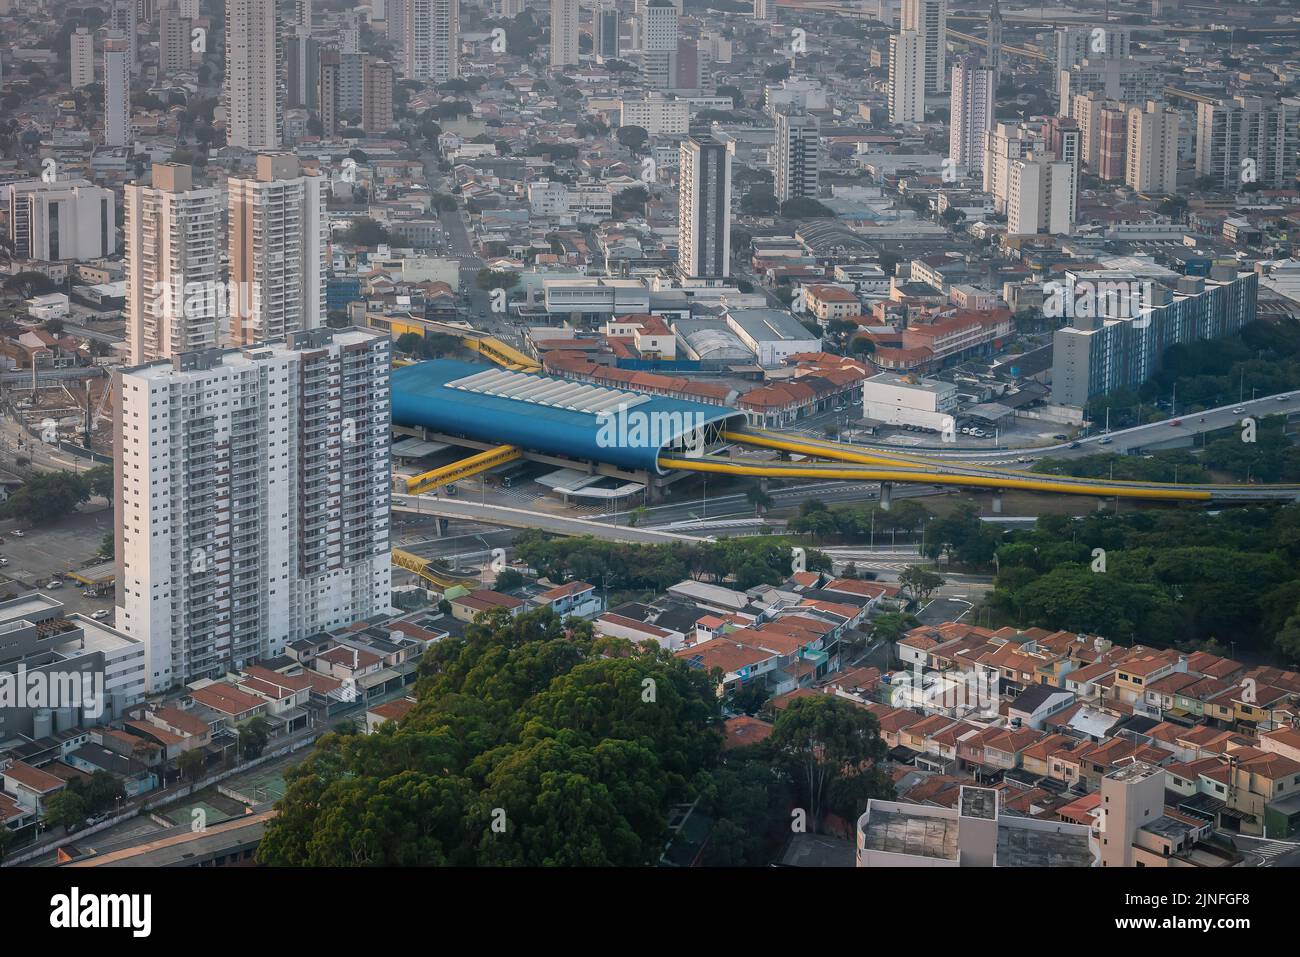 Vue aérienne du terminal de bus de Sacoma - Sao Paulo, Brésil Banque D'Images